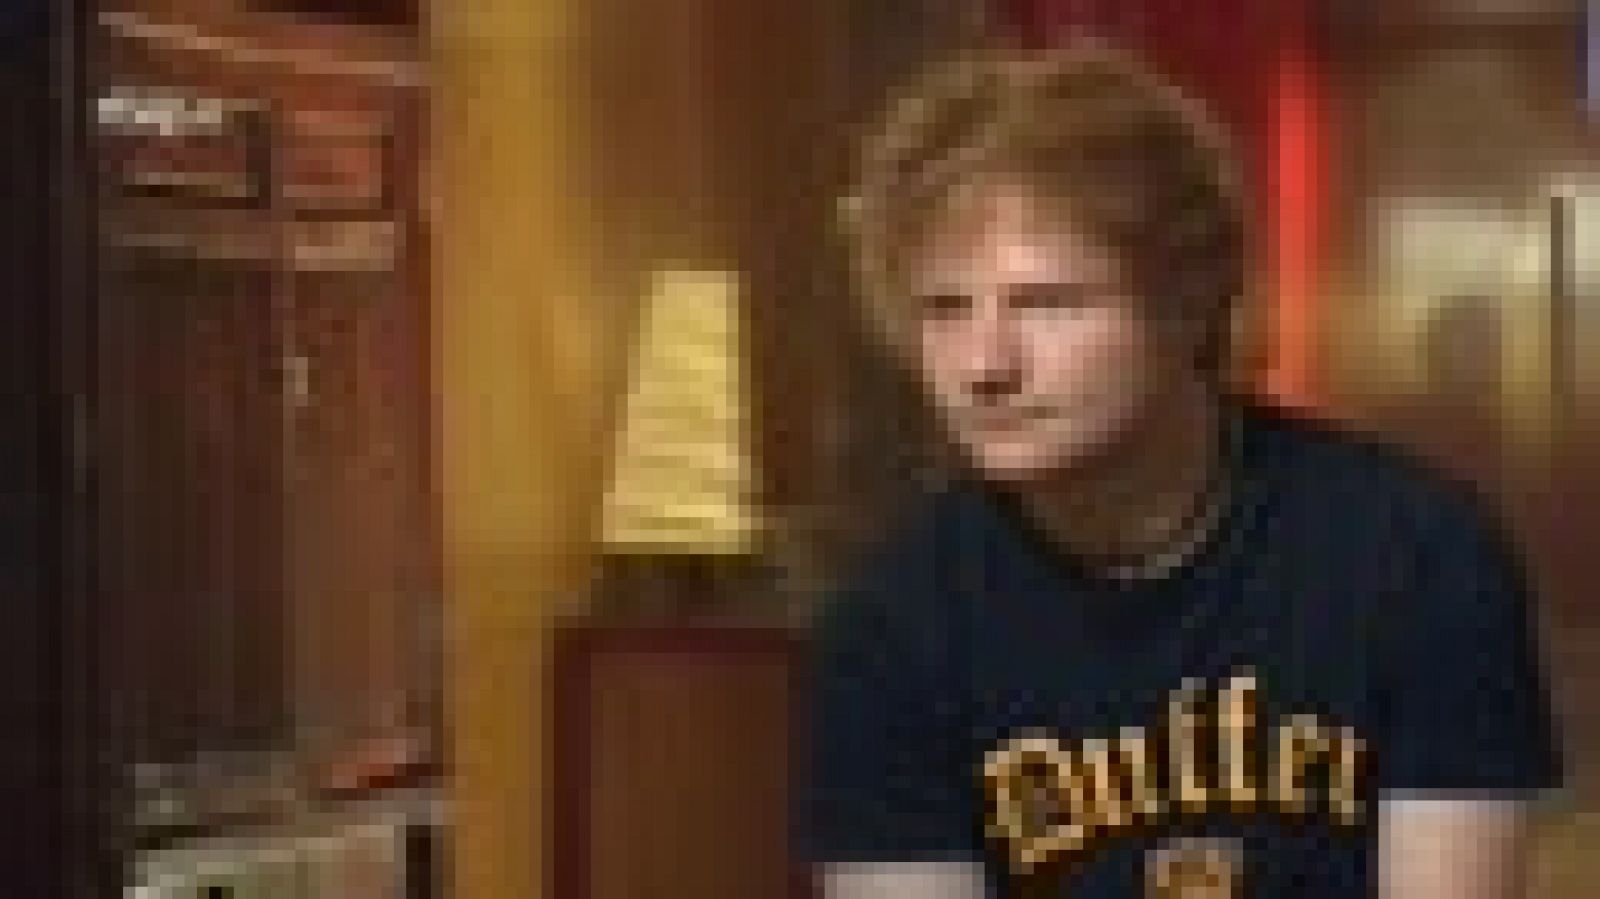 TVE entrevistó a Ed Sheeran en sus inicios